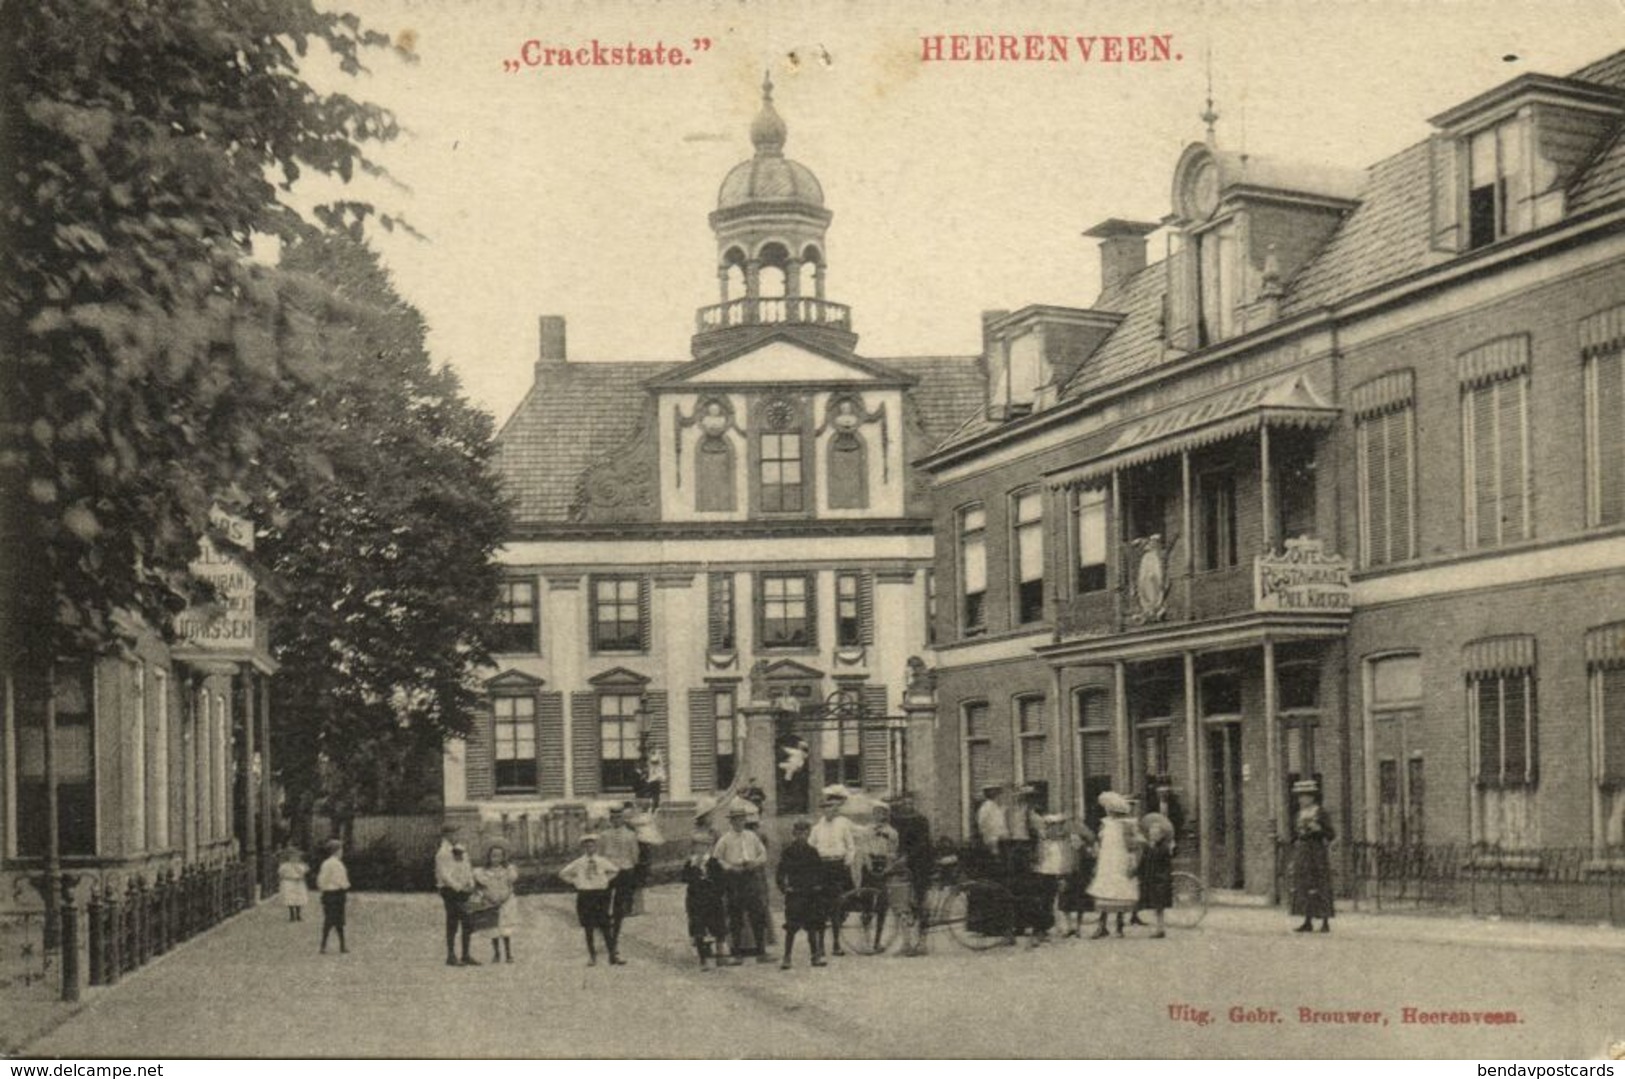 Nederland, HEERENVEEN, Crackstate Met Volk (1910s) Ansichtkaart - Heerenveen